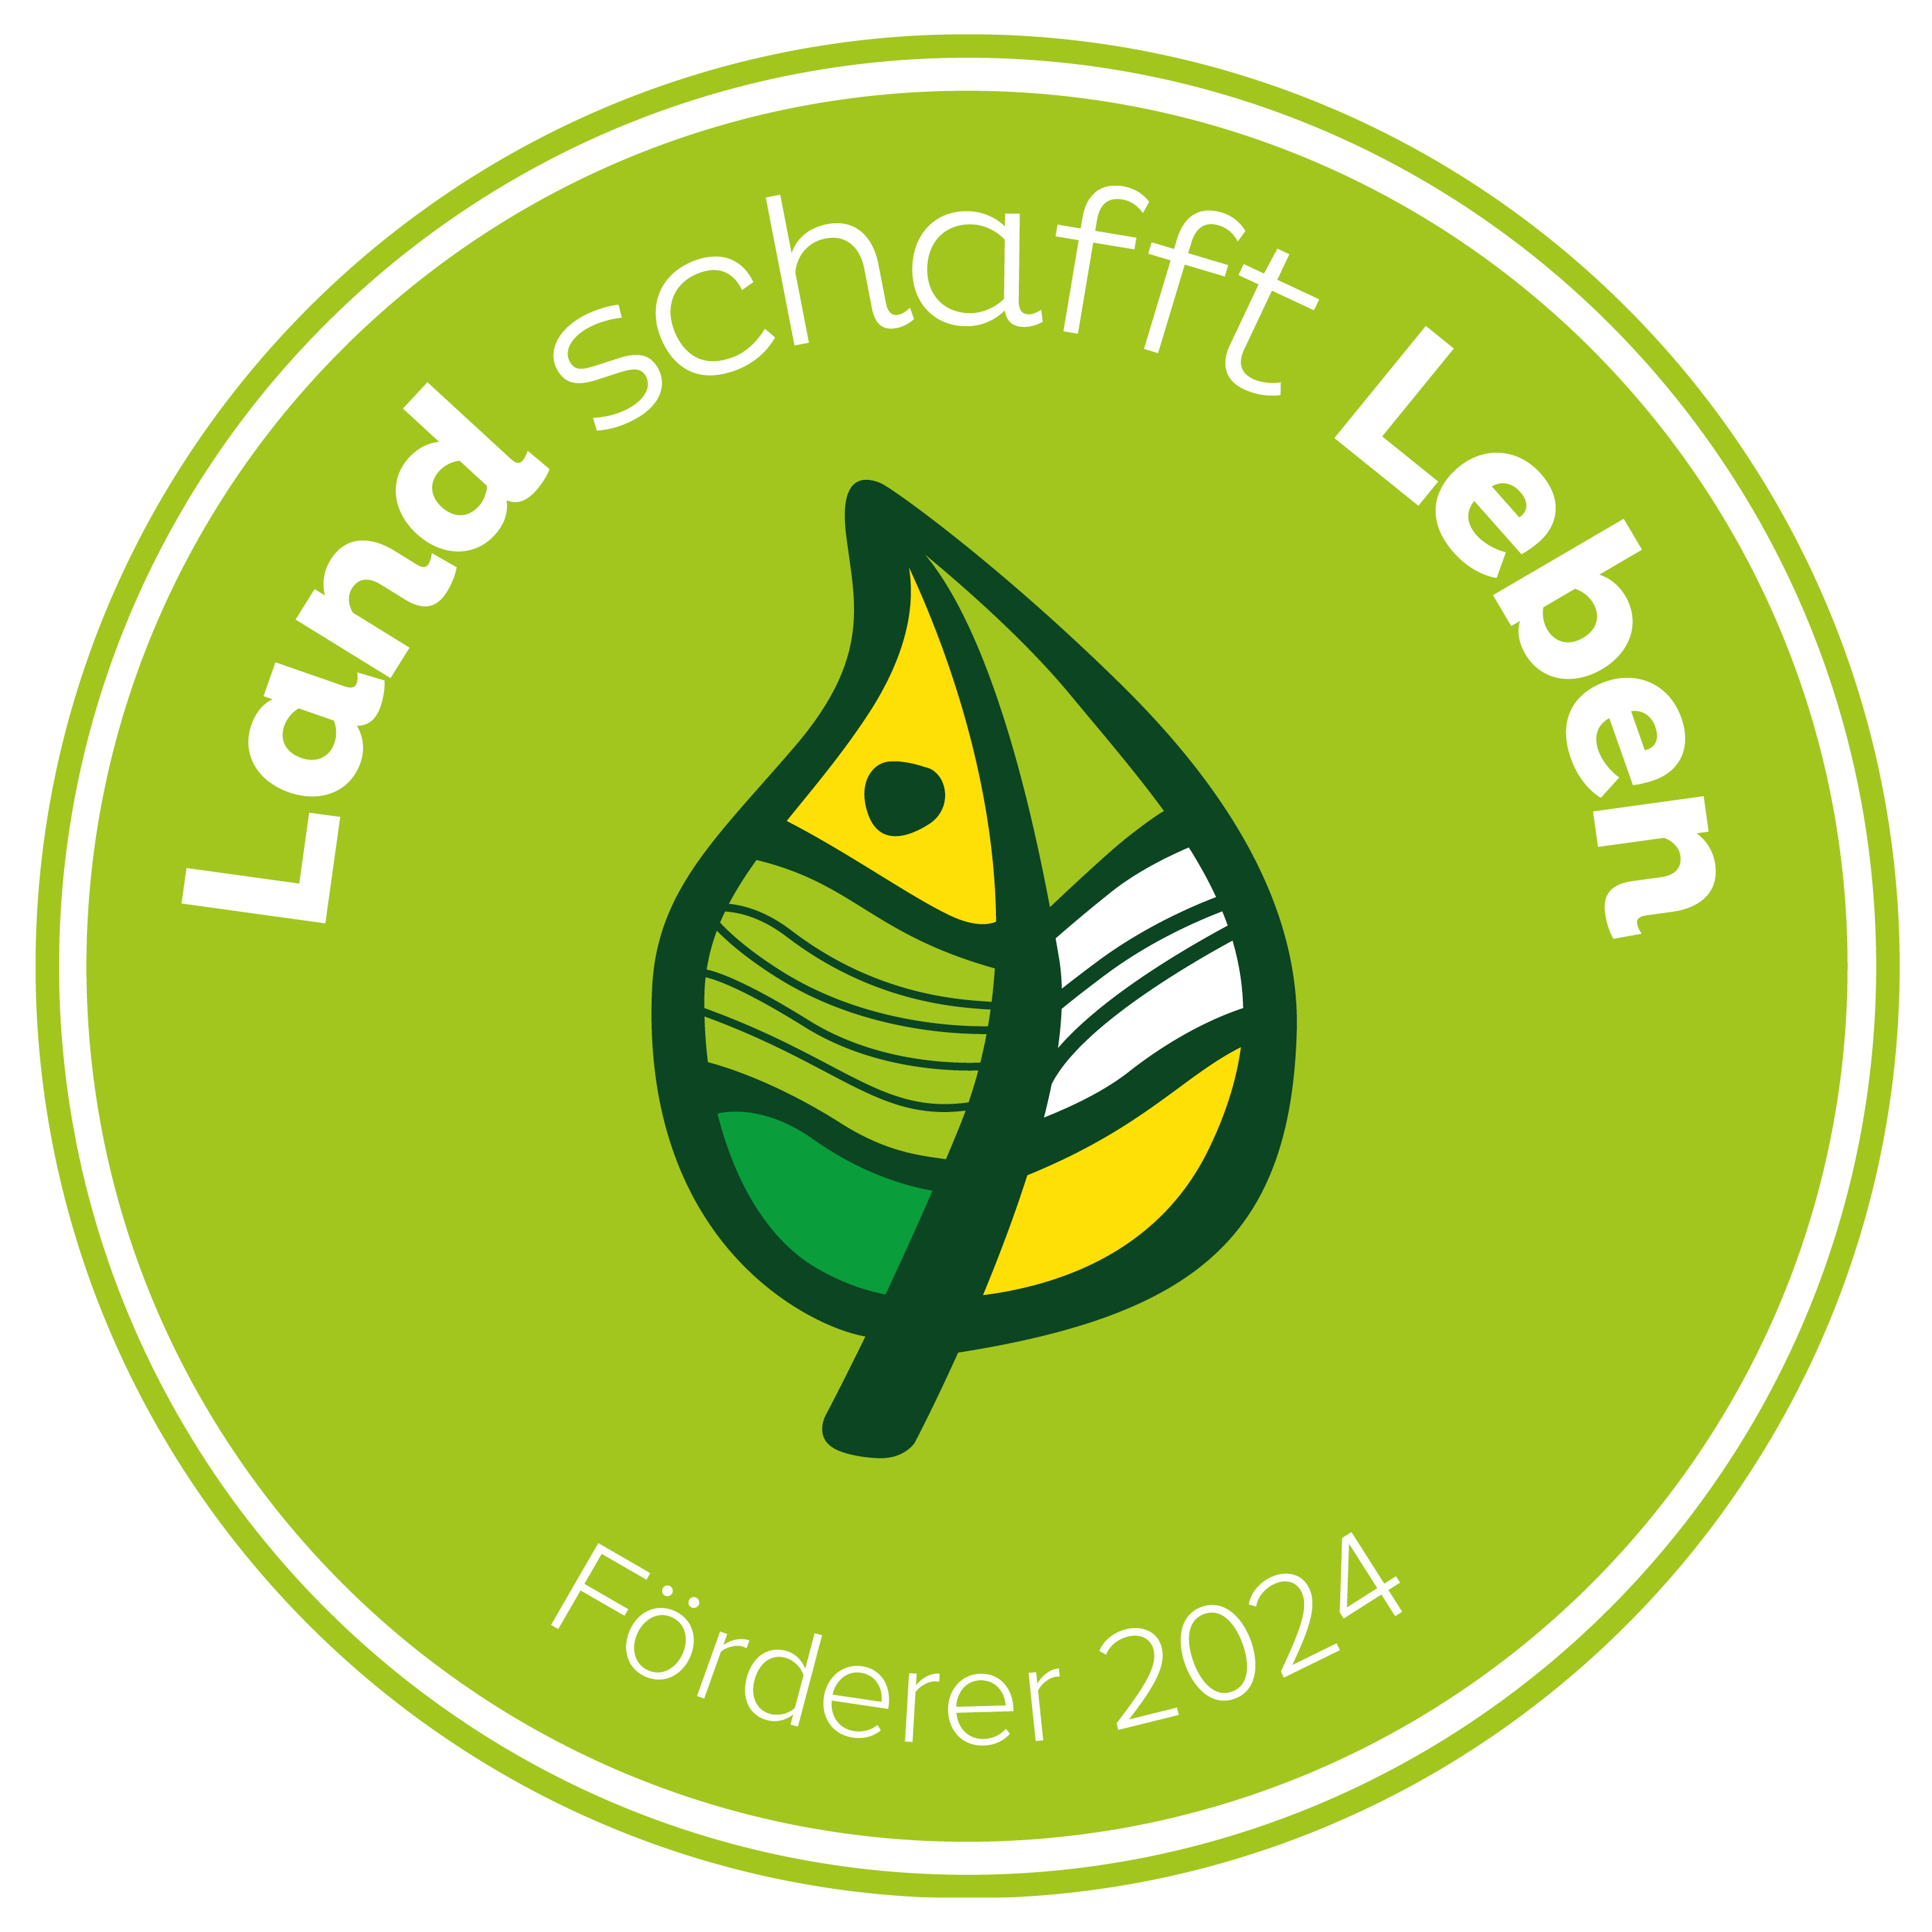 Landschafftleben zeigt die Bedeutung der Landwirtschaft für uns alle auf. Aus dieser Überzeugung heraus unterstützt auch Lugitsch diesen wichtigen Verein.